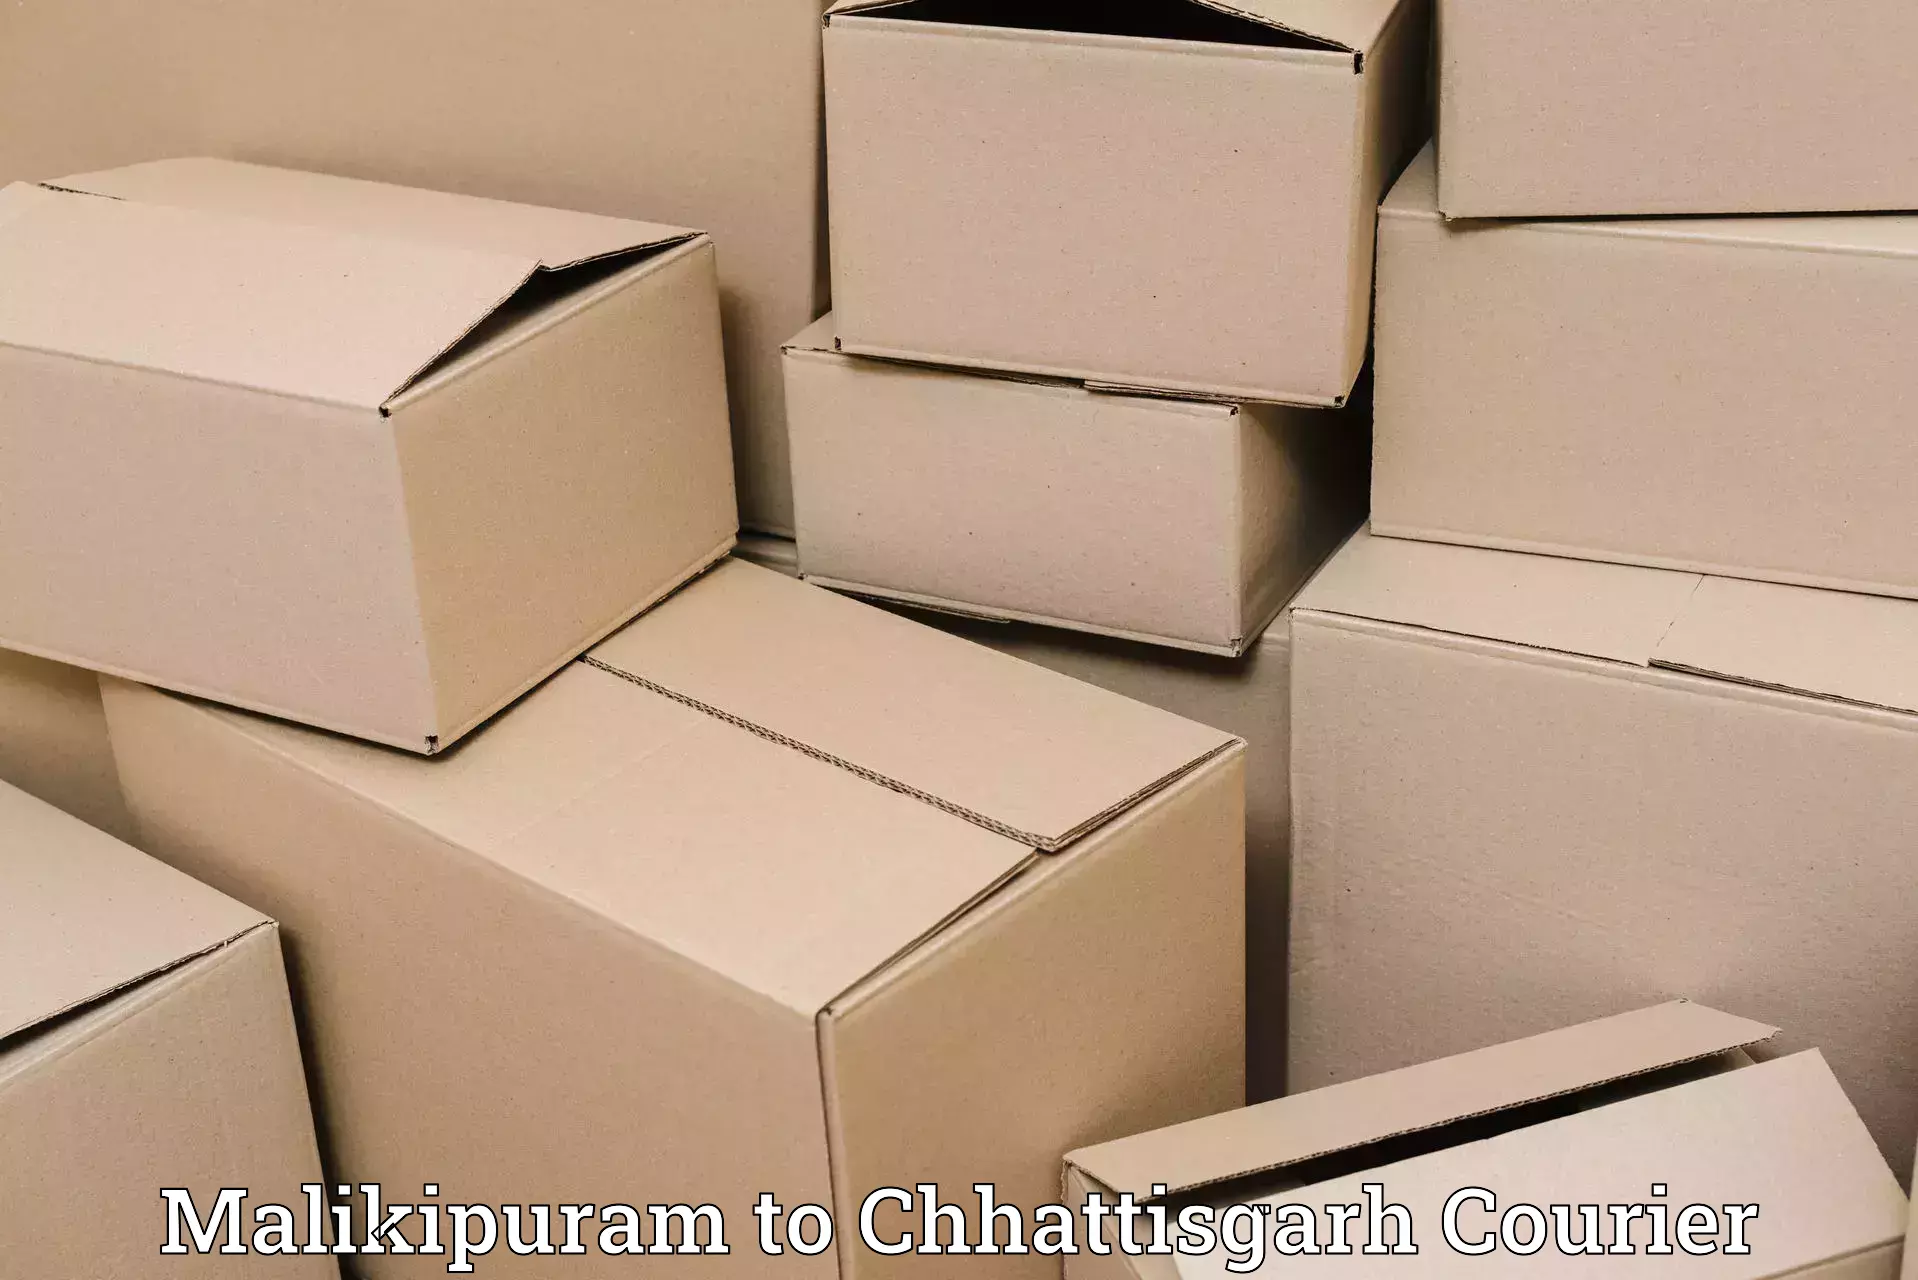 Efficient freight transportation Malikipuram to Pandariya